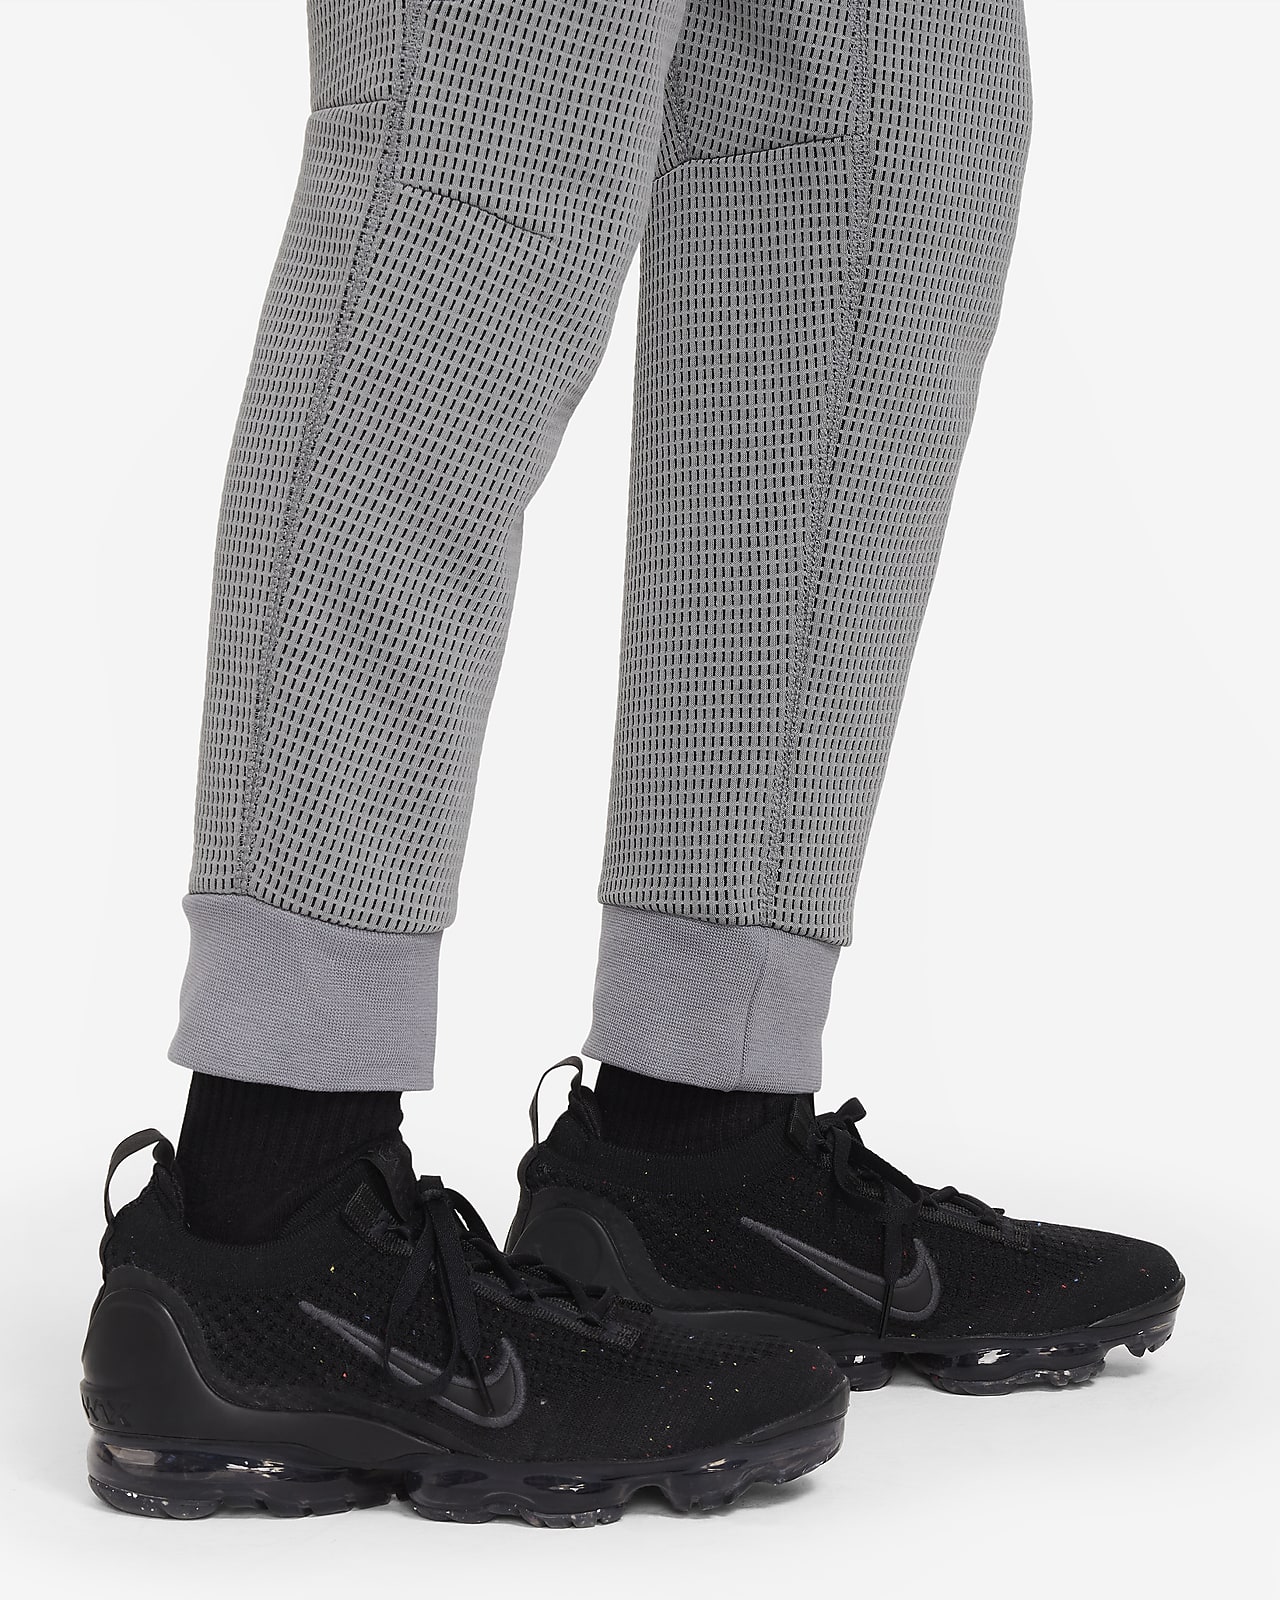 Nike Sportswear Tech Fleece Older Kids' (Boys') Trousers. Nike AU